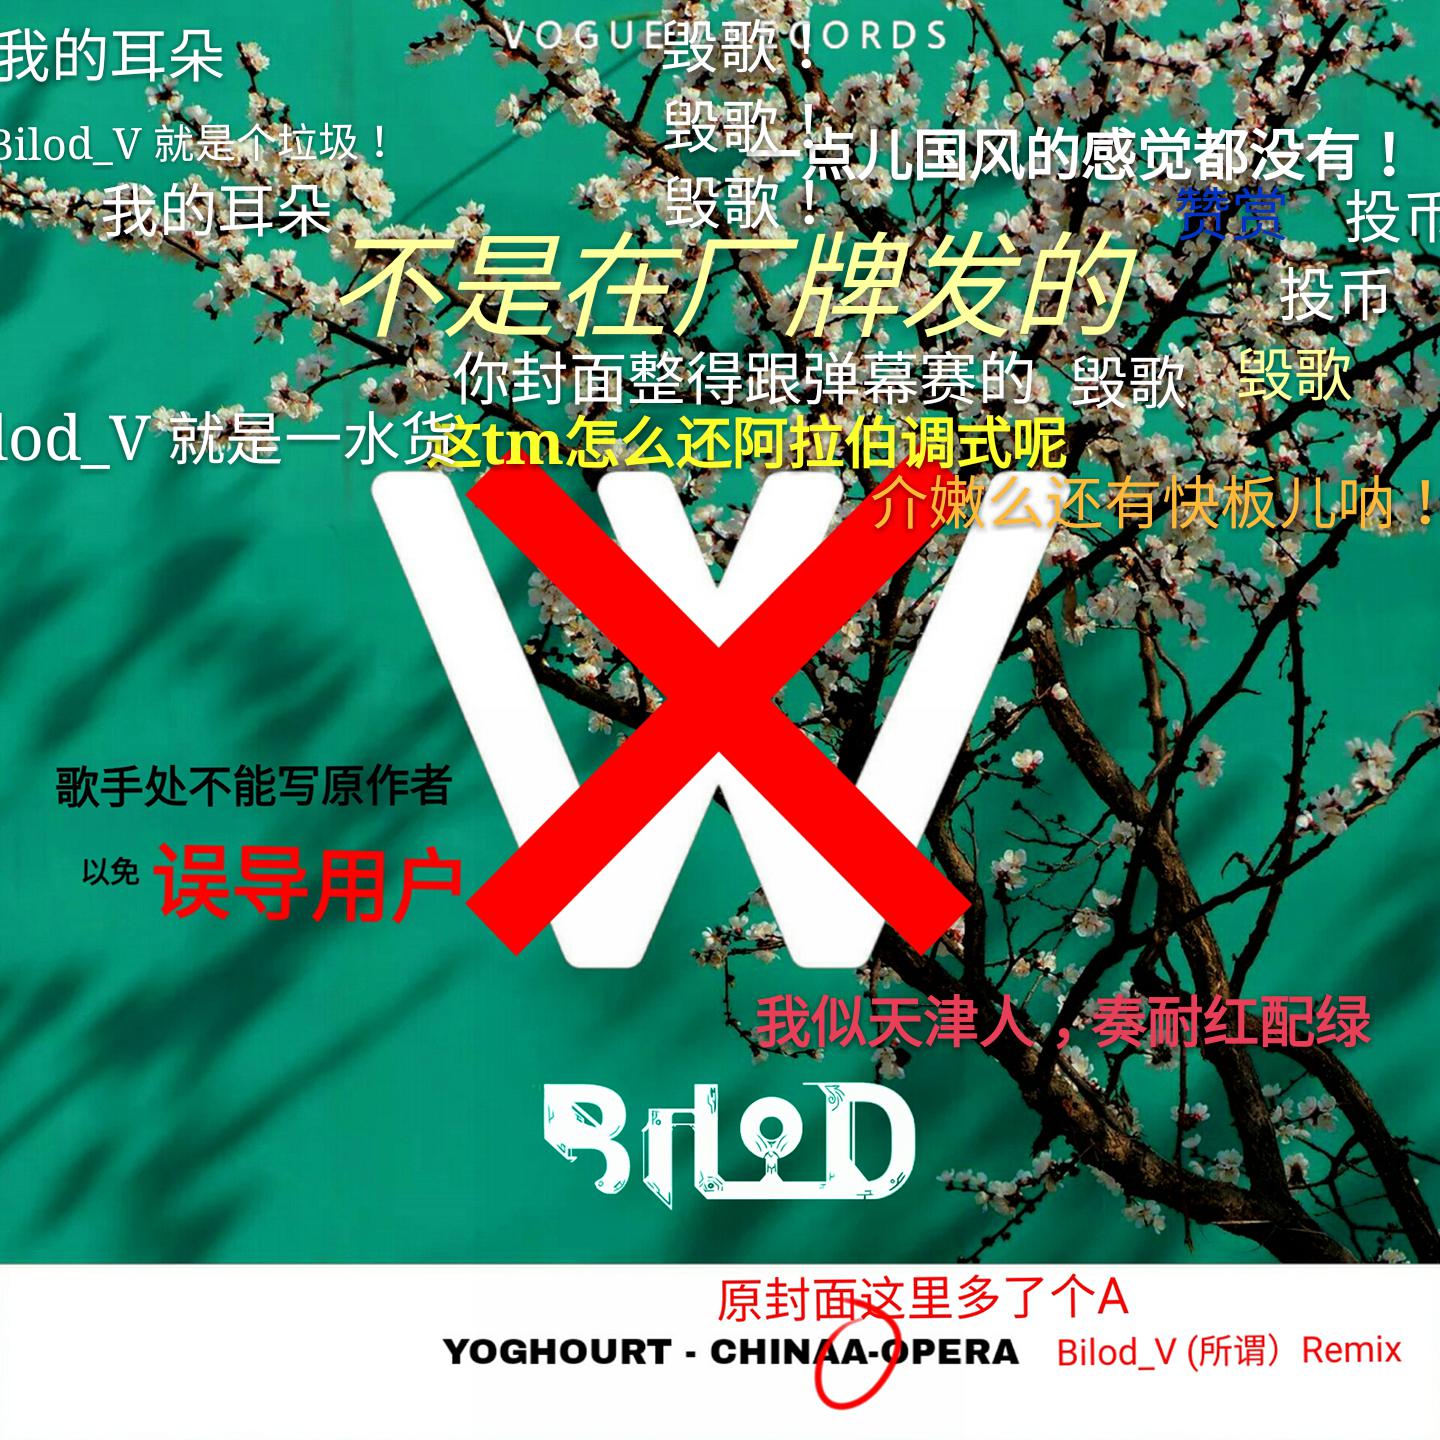 China-opera(Bilod_V remix)